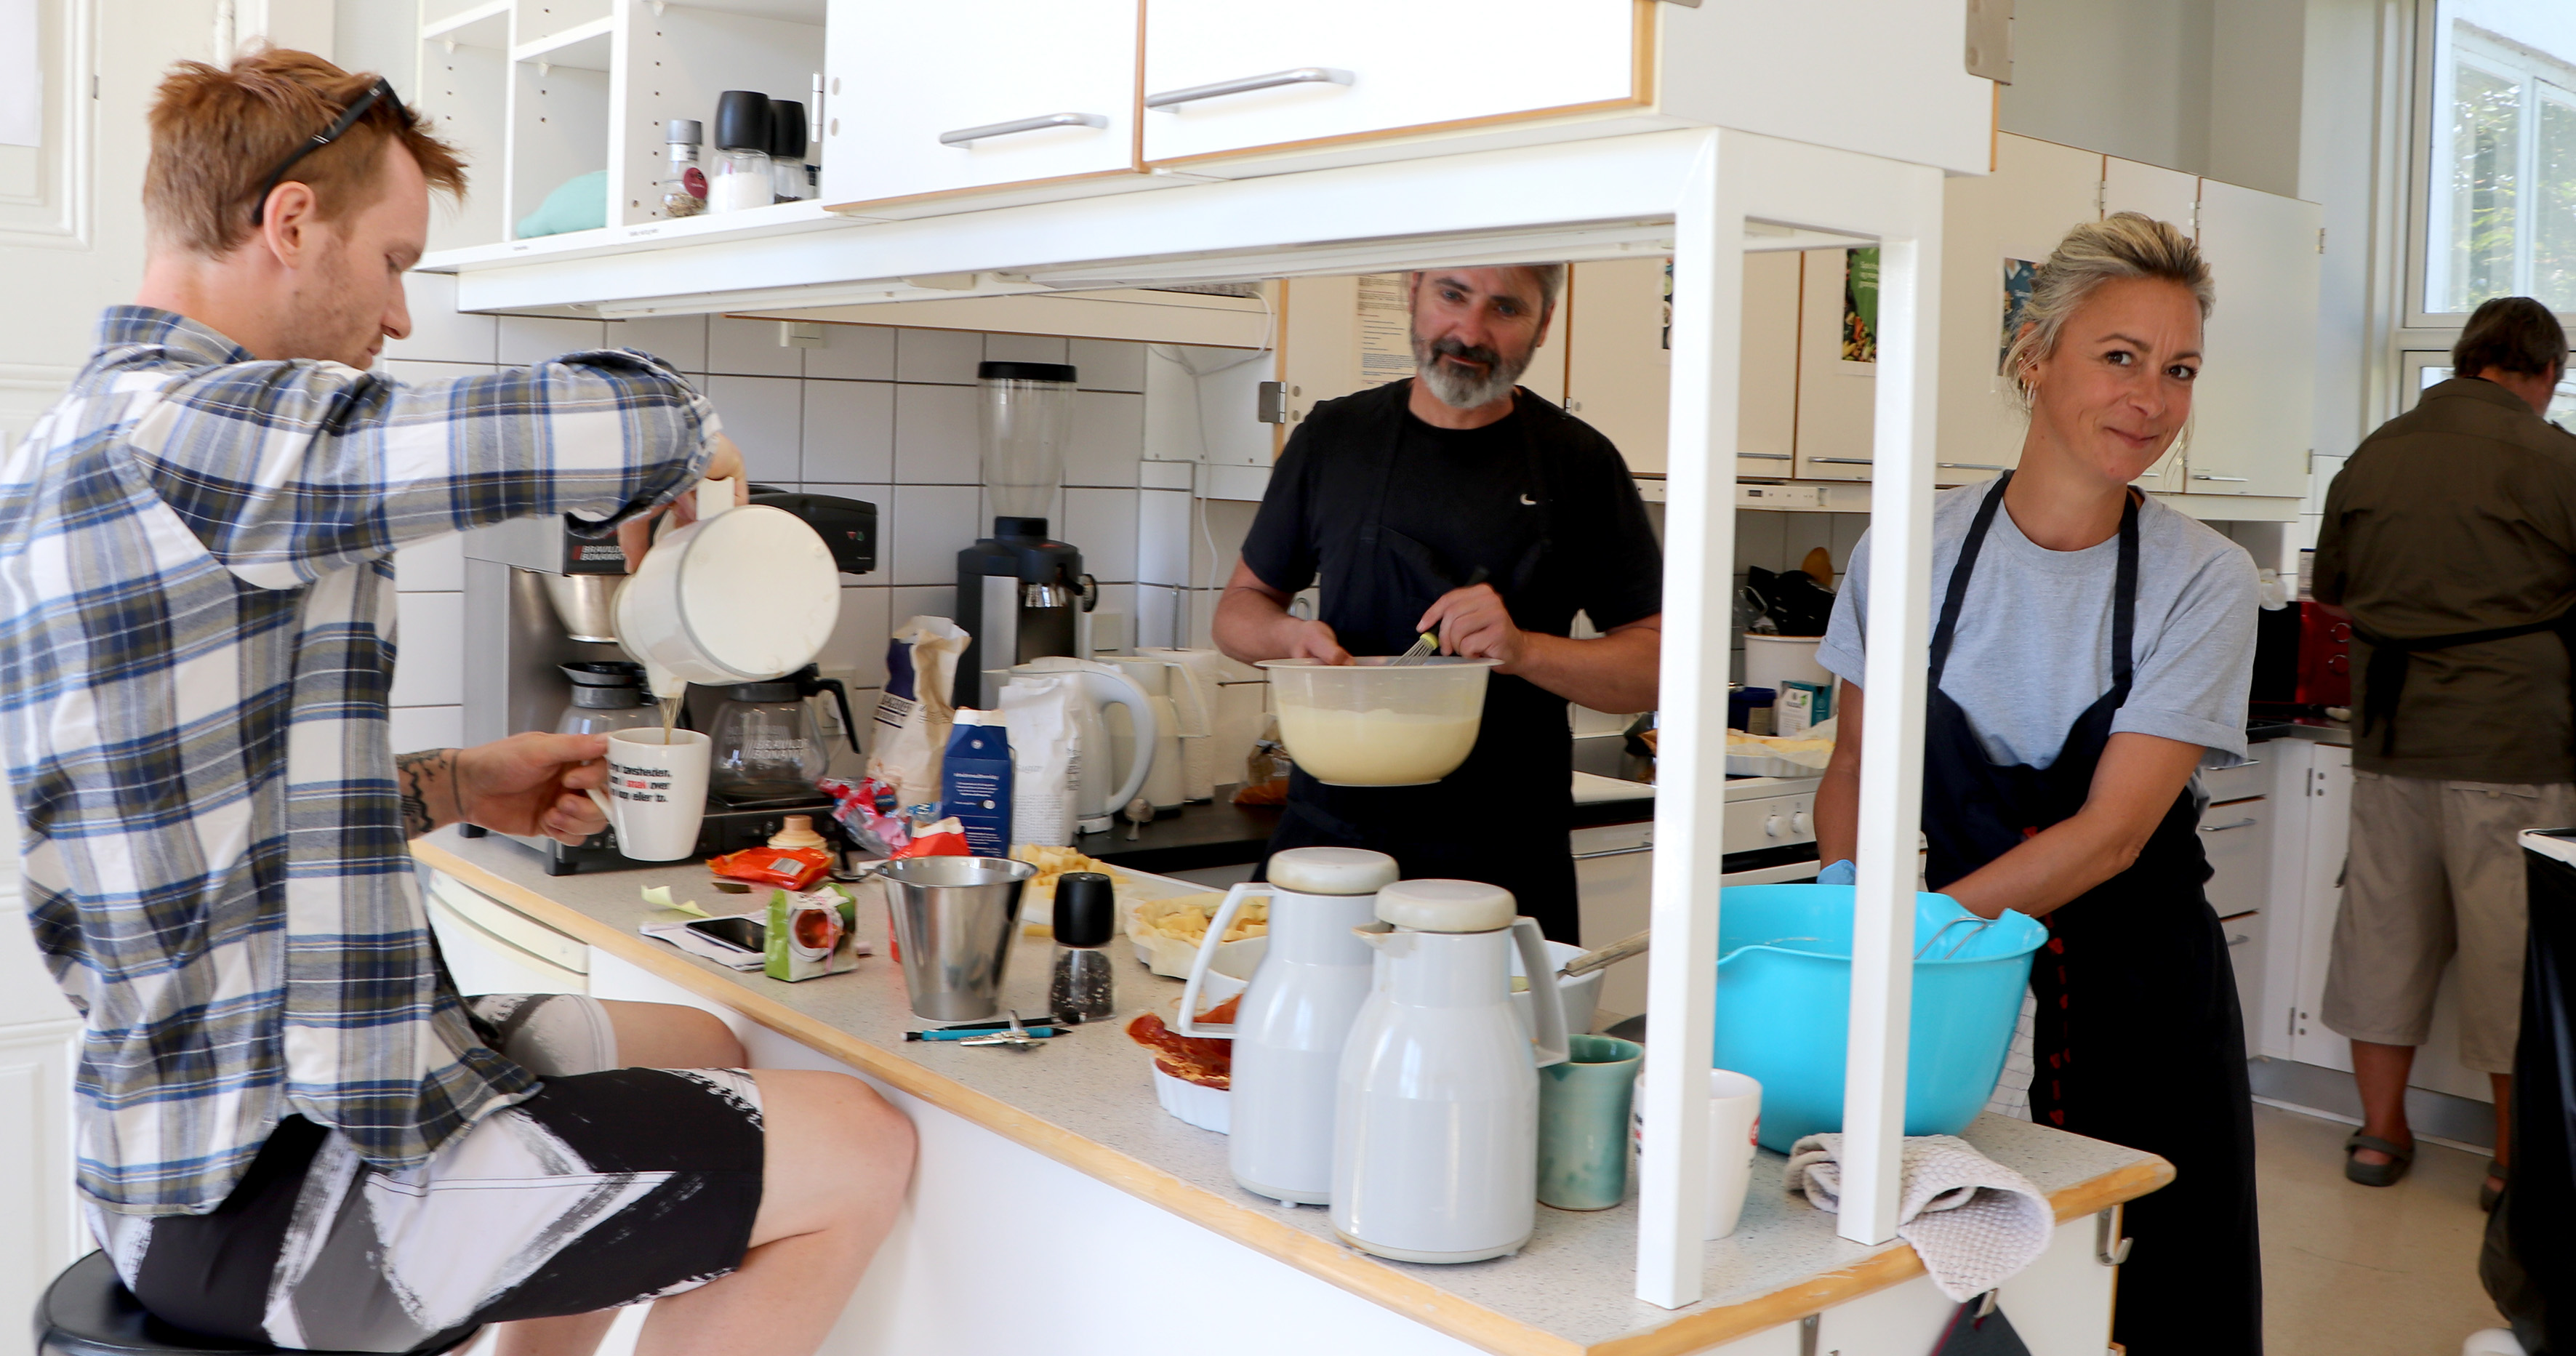 Billedet viser køkkenet i Sundhedscenter Hvide Hus, hvor Jacob Mols er ved at skænke kaffe, mens Signe Kromann Østergaard laver mad.